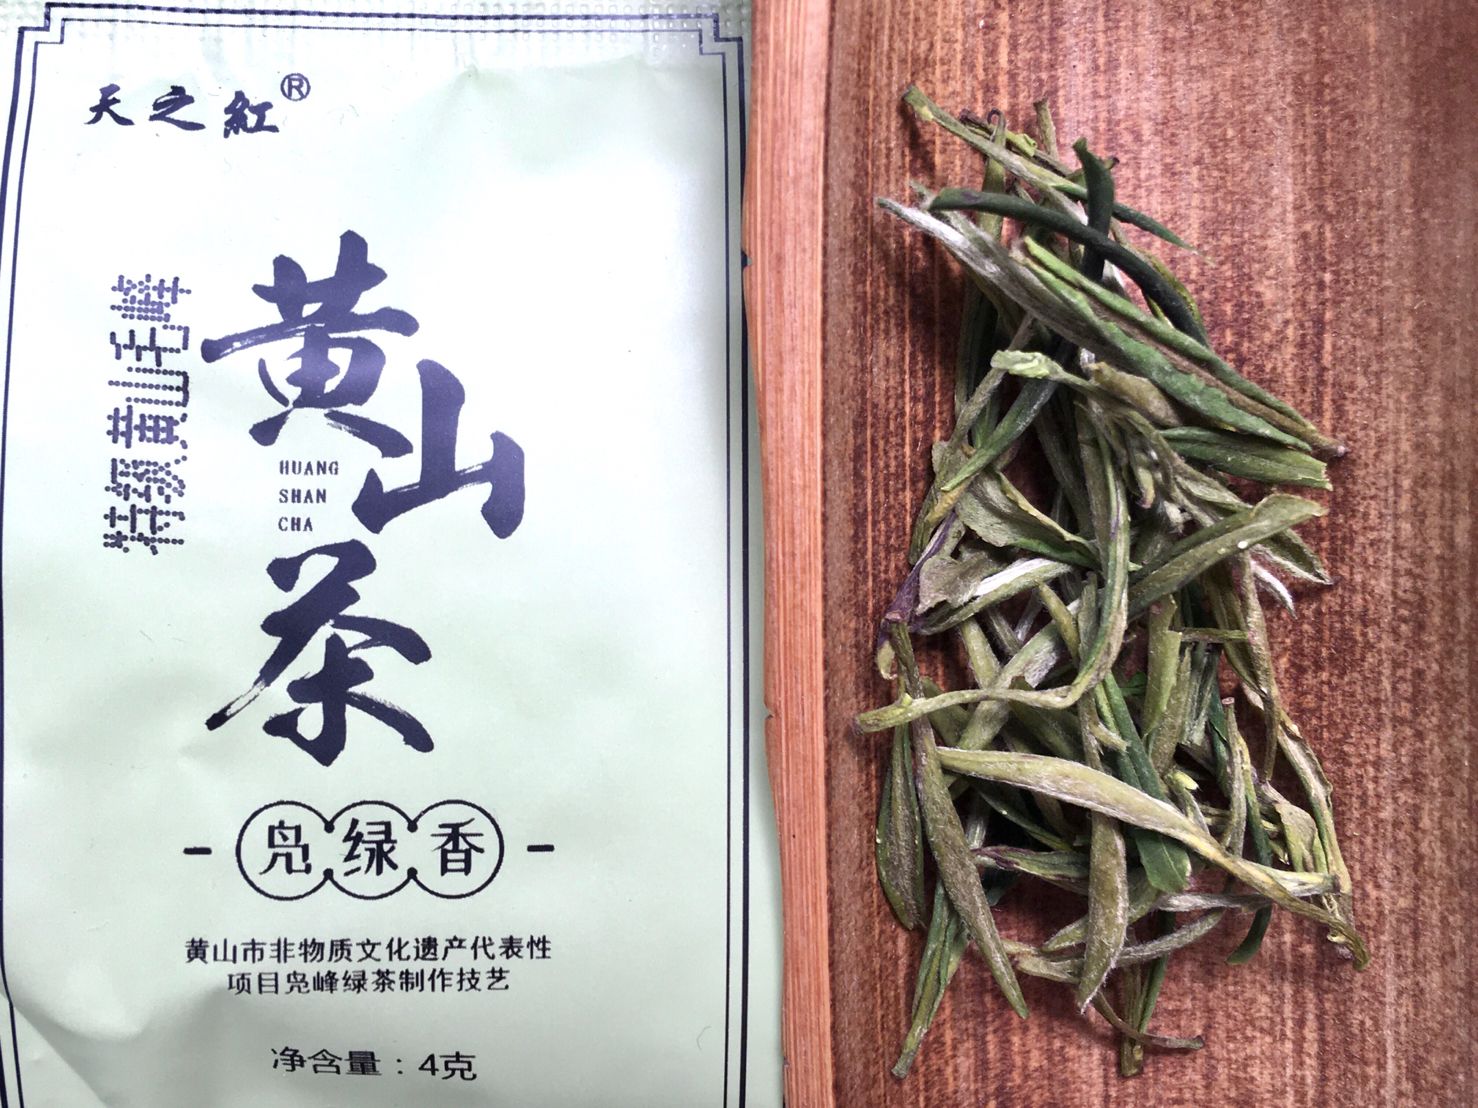 Yǒu Jī Huáng Shān Máo Fēng Lǜ Chá, 有机黄山毛峰綠茶, Organic Huangshan Maofeng Green Tea